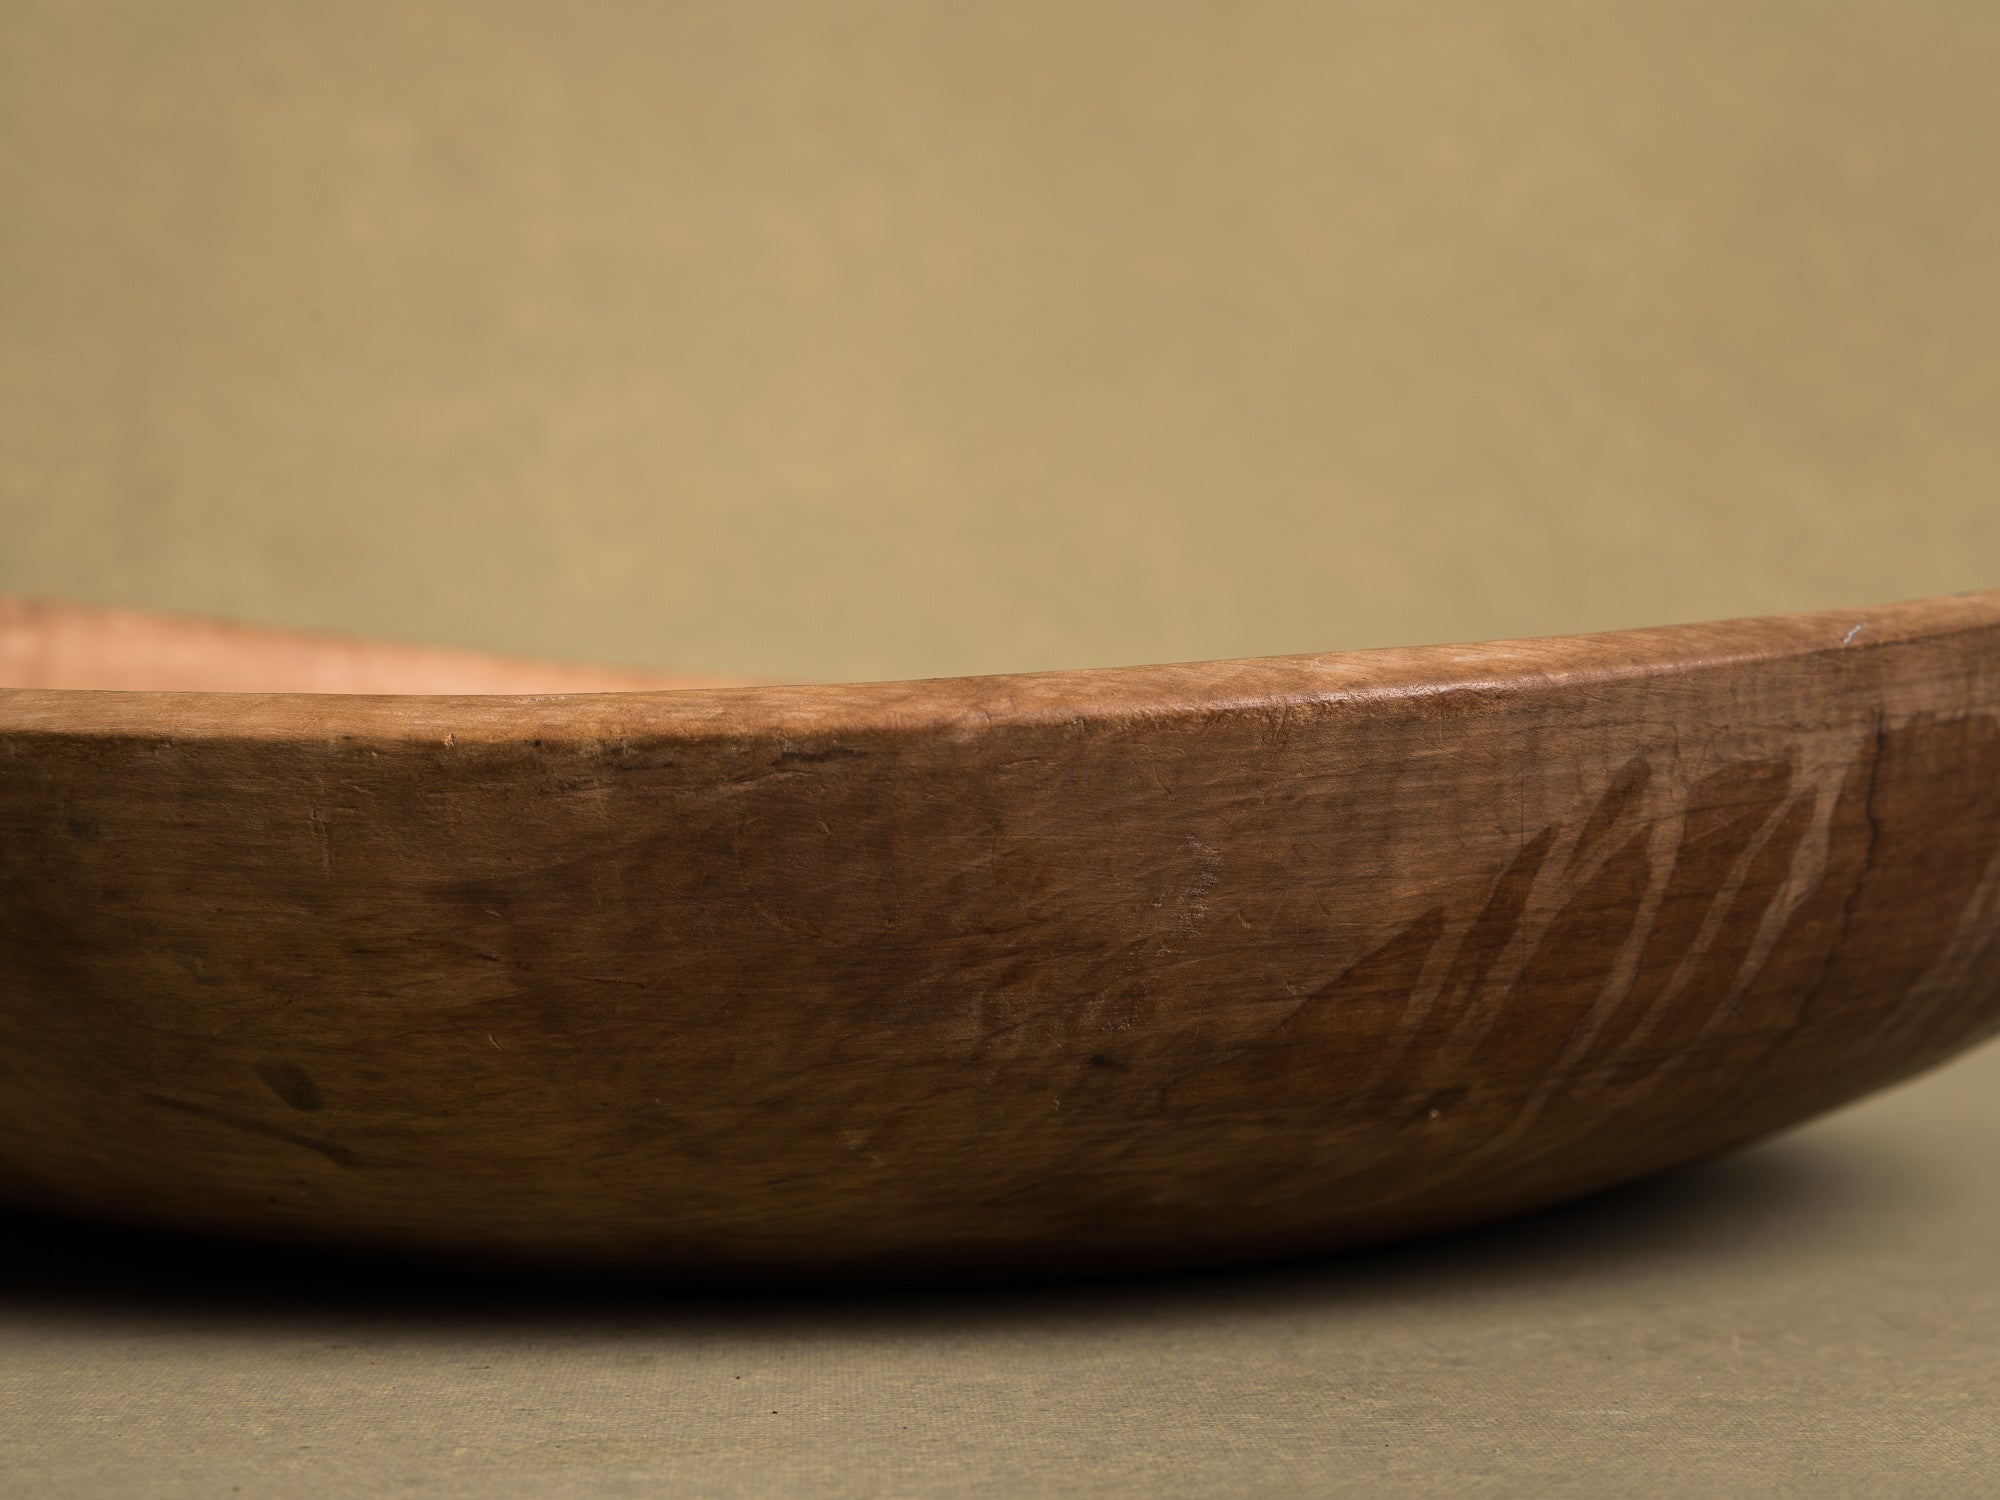 Rare et ancienne coupe de mariage en bouleau, art paysan, Norvège (XIXe siècle)..Unique Old birchwood carved wedding bowl, Peasant art, Norway (19th century)